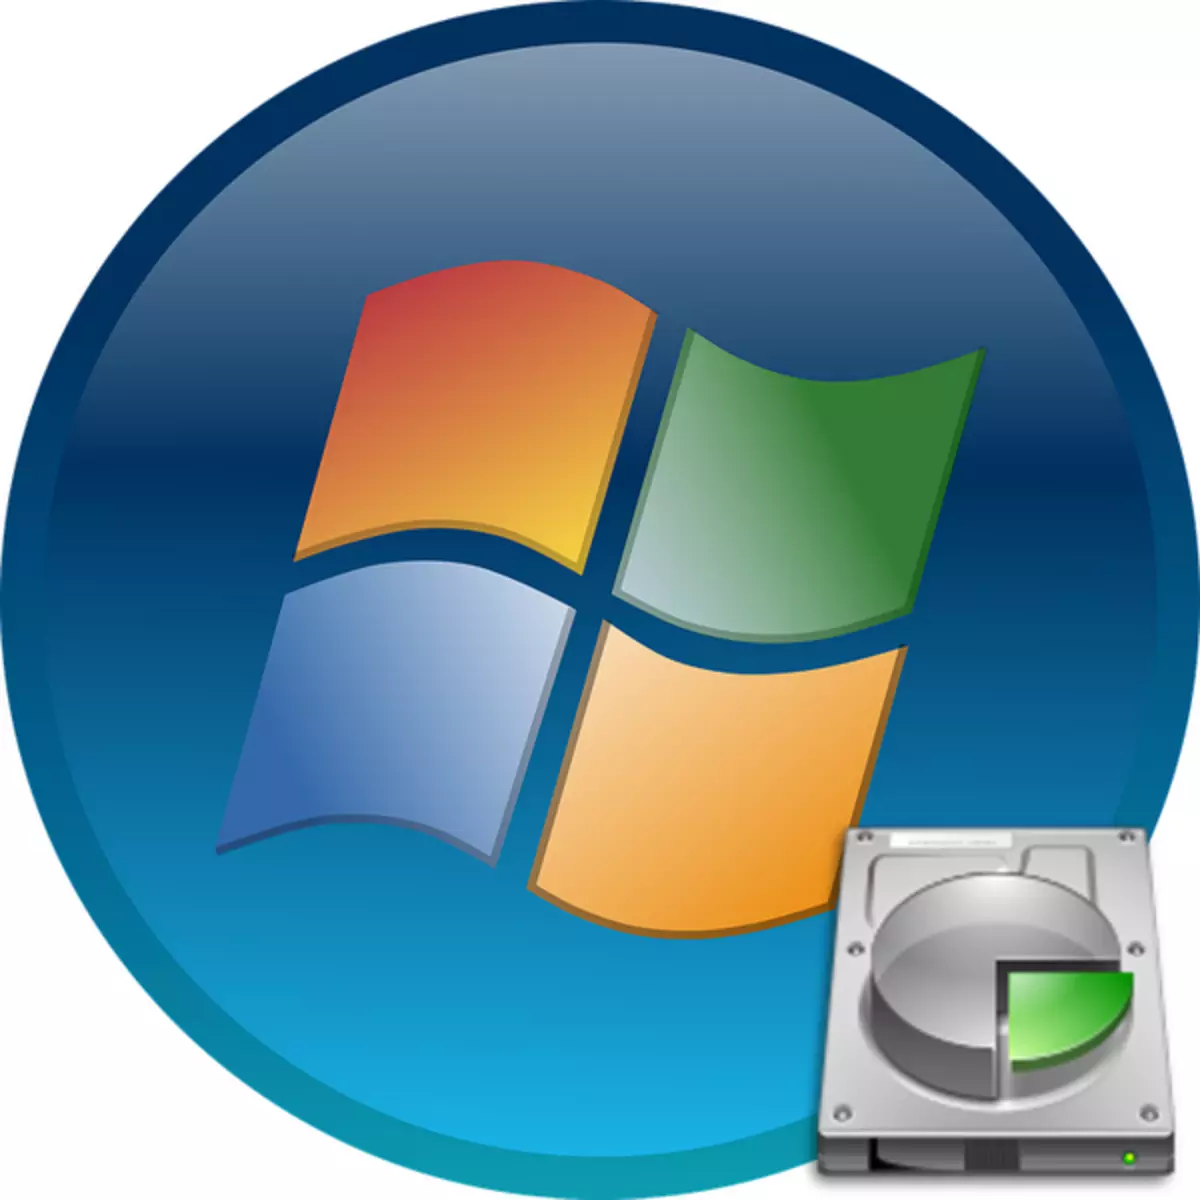 Cara menghapus bagian "System Reserved" di Windows 7